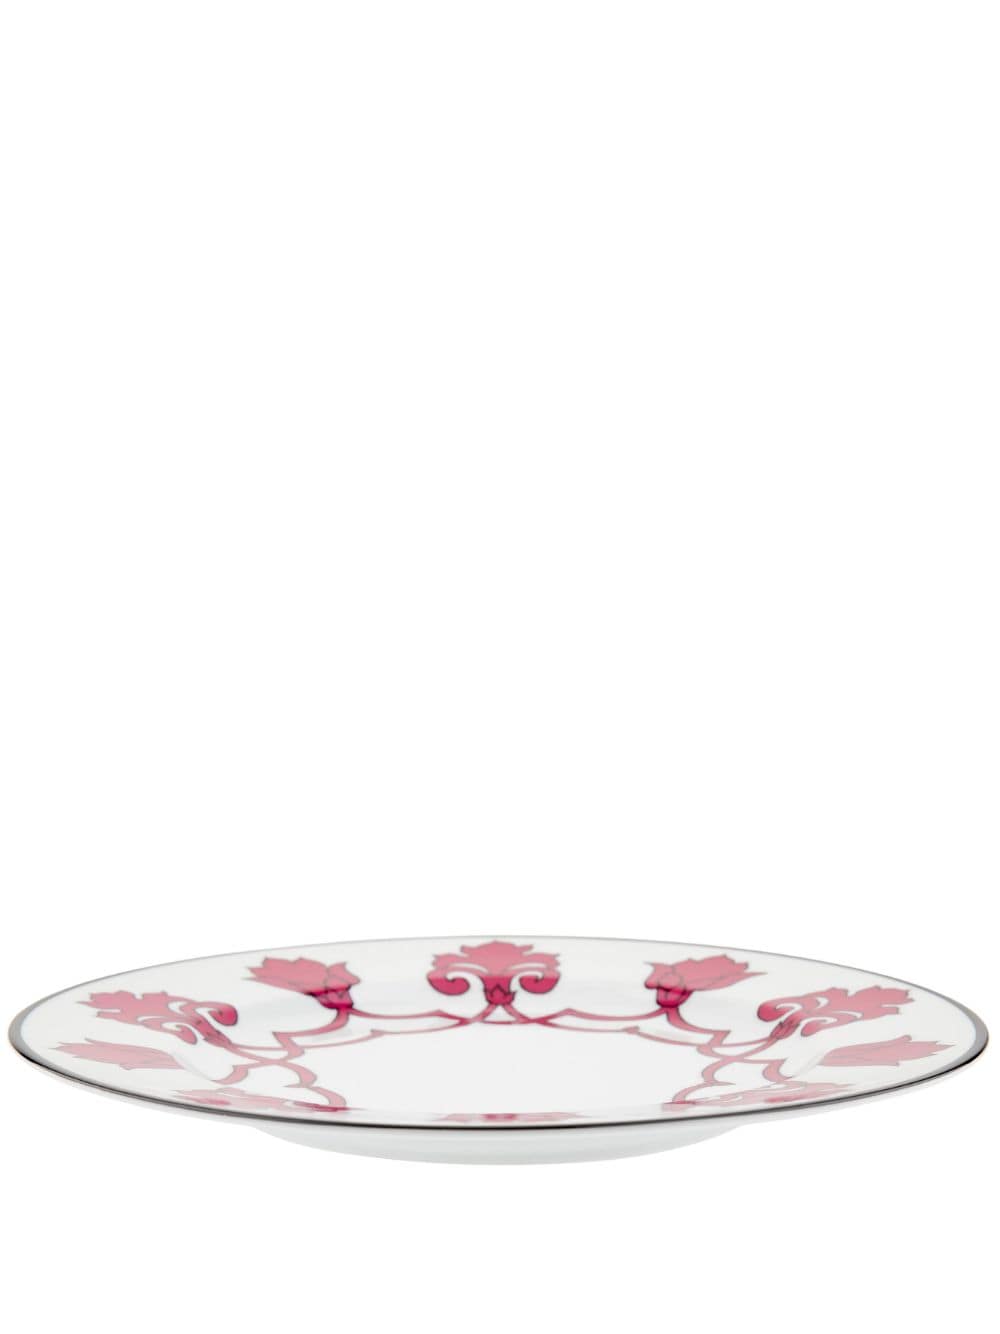 Pinto Paris Jaipur Porcelain Dinner Plate In Rosa